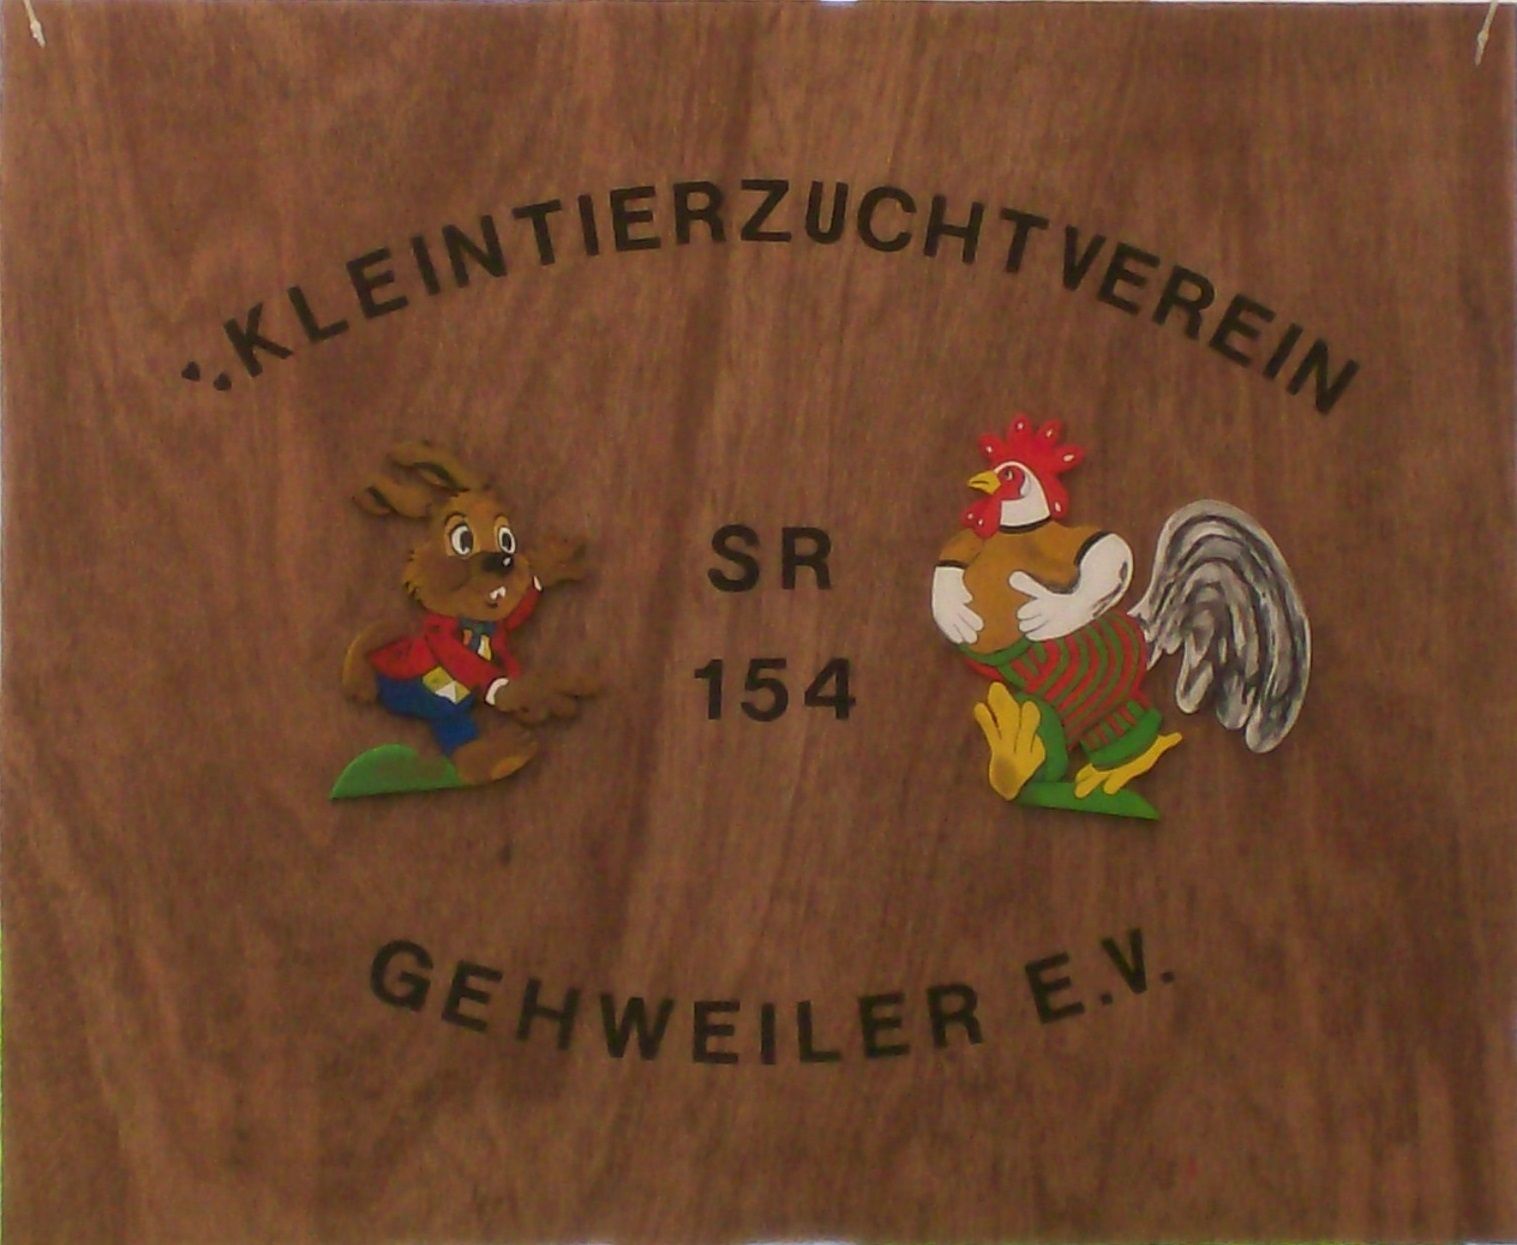 Profilbild des Vereins Kleintierzuchtverein SR 154 Gehweiler e.V.